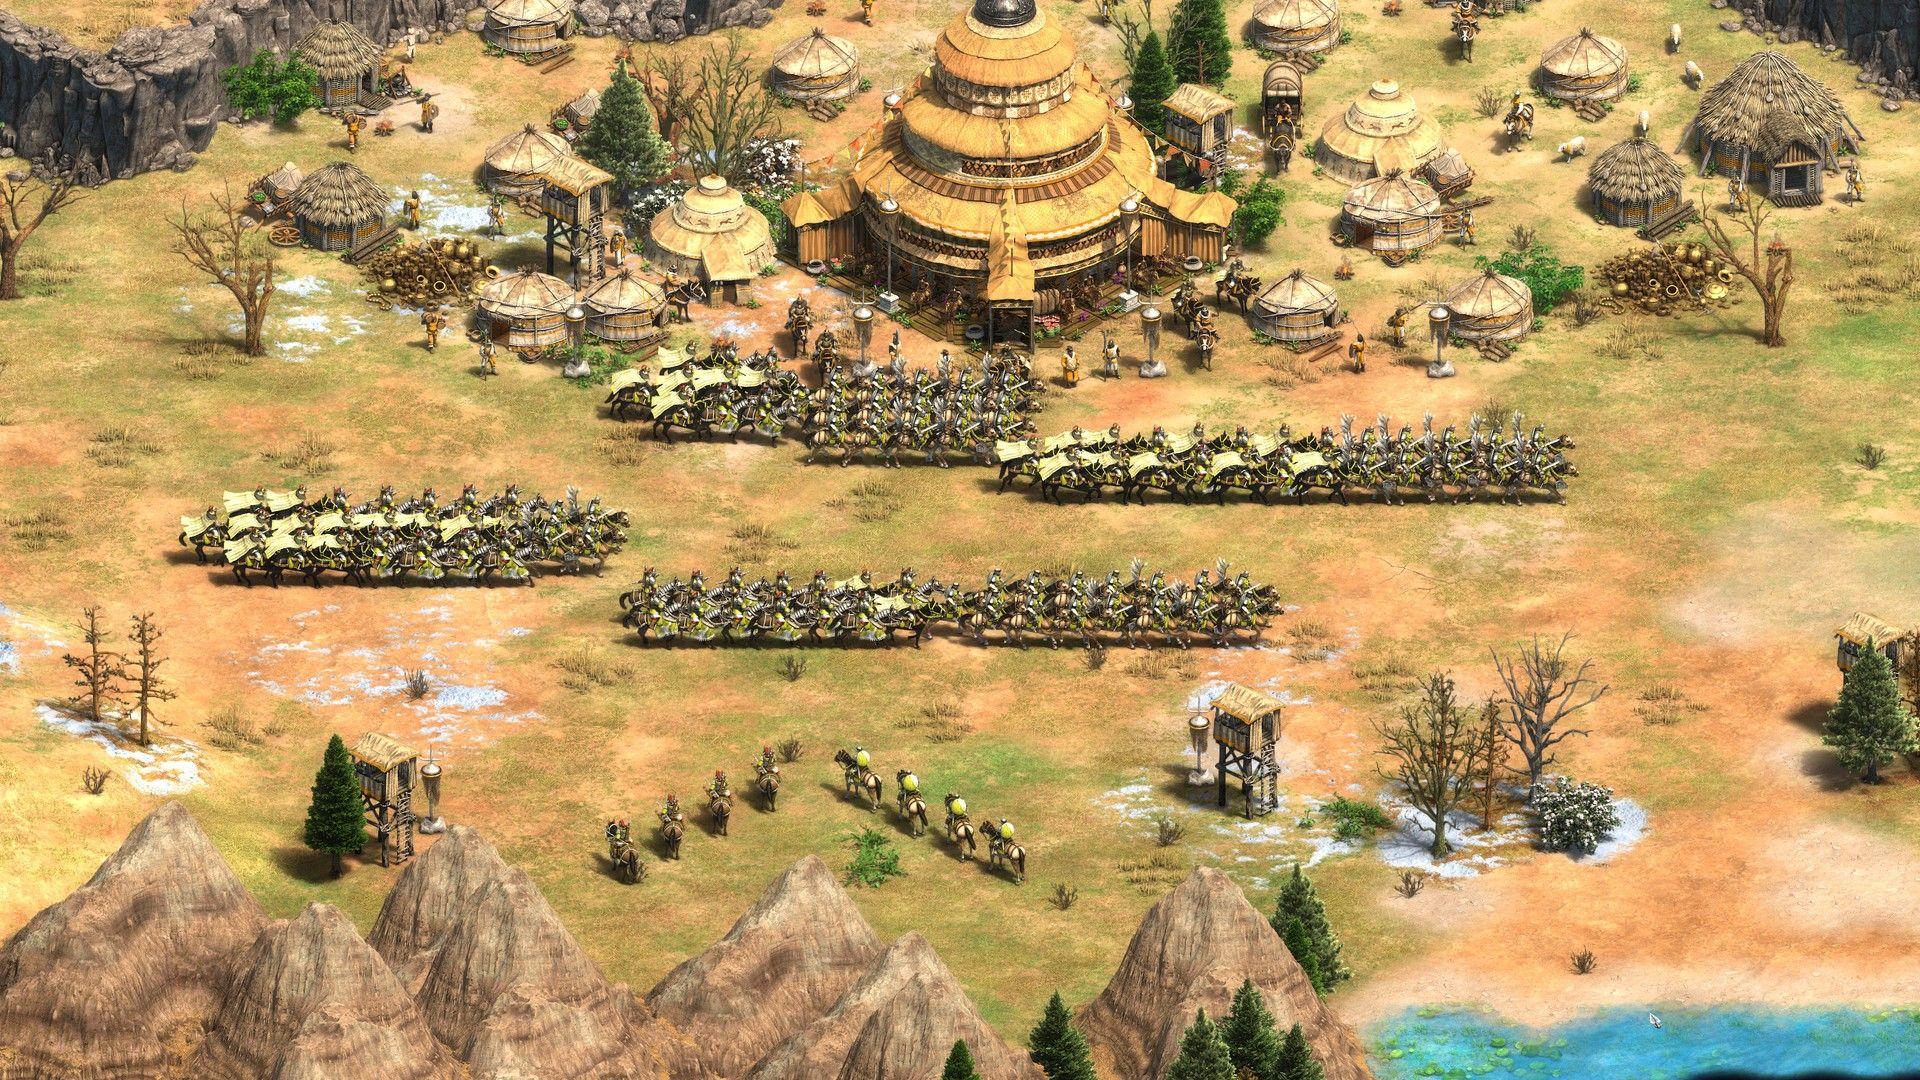 Spolszczenie Age of Empires II: Definitive Edition